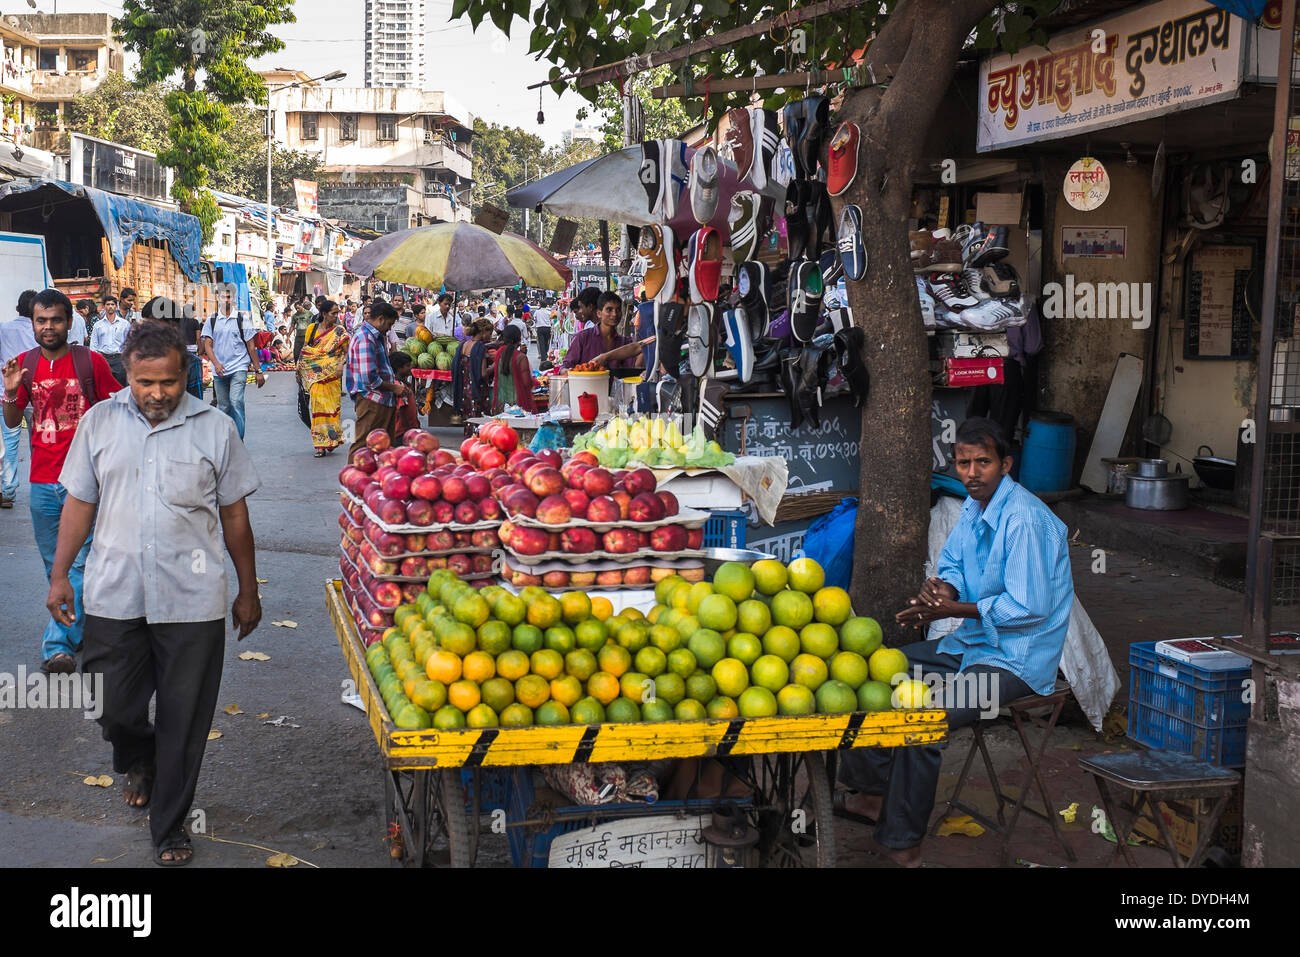 Un fornitore di frutta tendente al suo stallo in una trafficata strada del mercato. Foto Stock